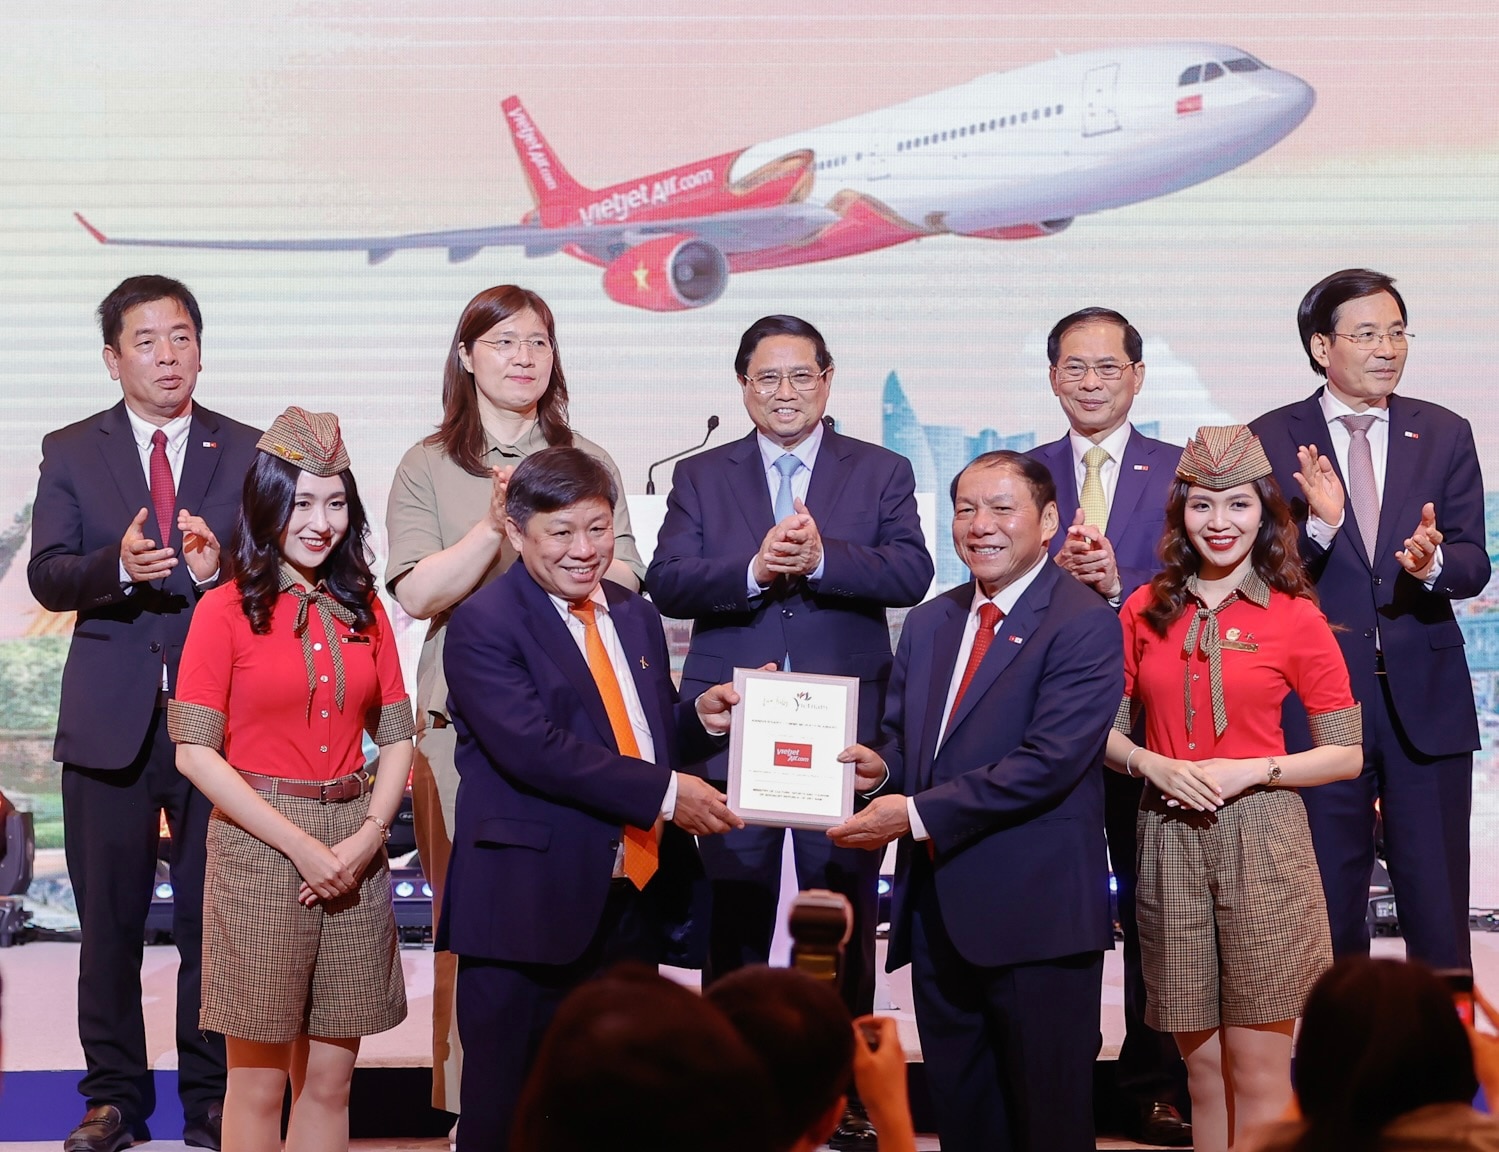 Dưới sự chứng kiến của Thủ tướng Phạm Minh Chính, Bộ trưởng Bộ VHTT&DL Nguyễn Văn Hùng trao tặng Kỷ niệm chương chúc mừng cho hành trình 10 năm kết nối giữa Việt Nam - Hàn Quốc của Vietjet